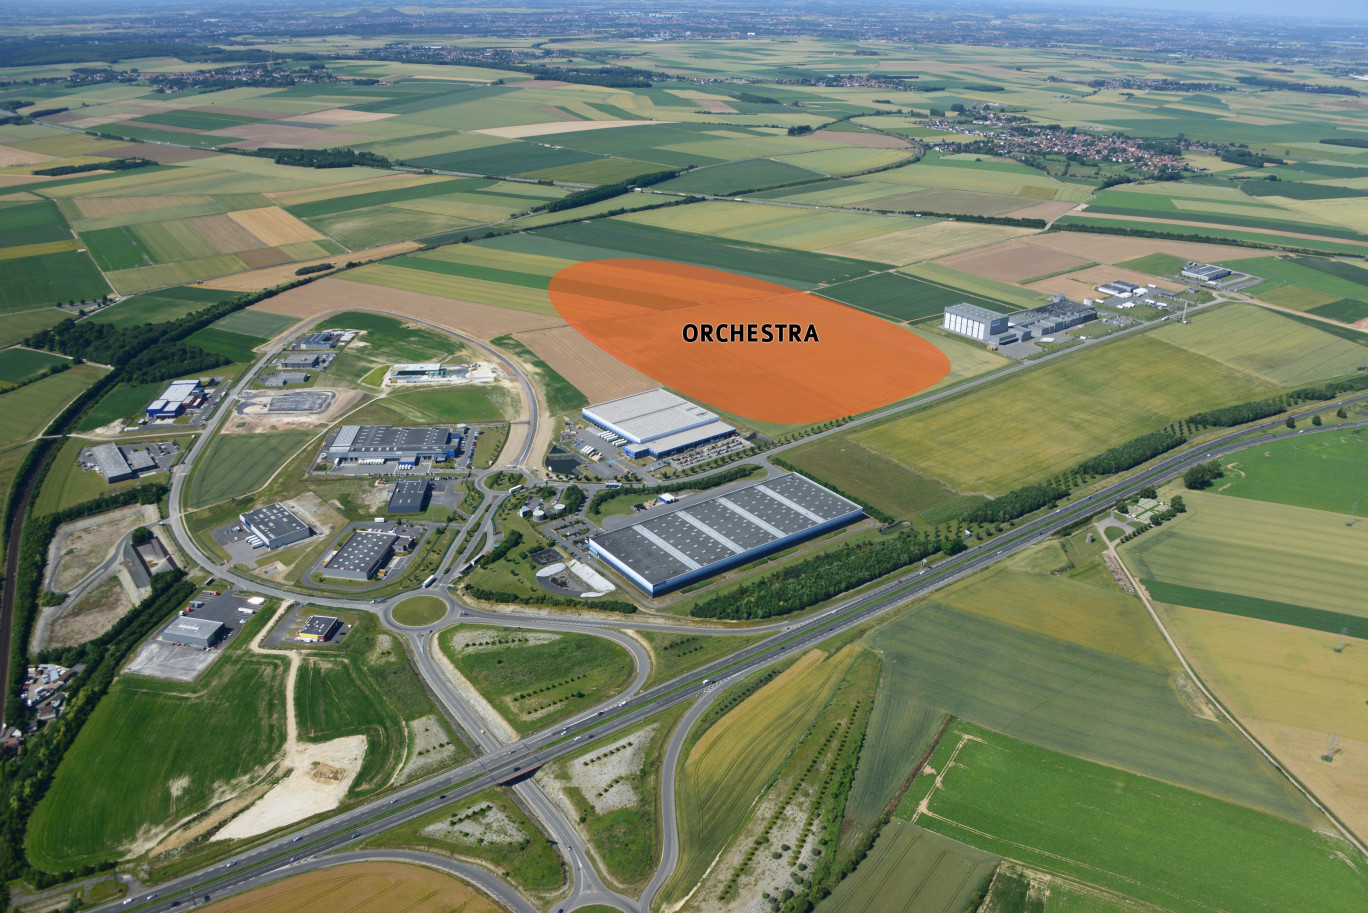 La plateforme logistique Orchestra sera installée à Actiparc près d’Arras à quelques kilomètres de l’entrée de l’autoroute A1.